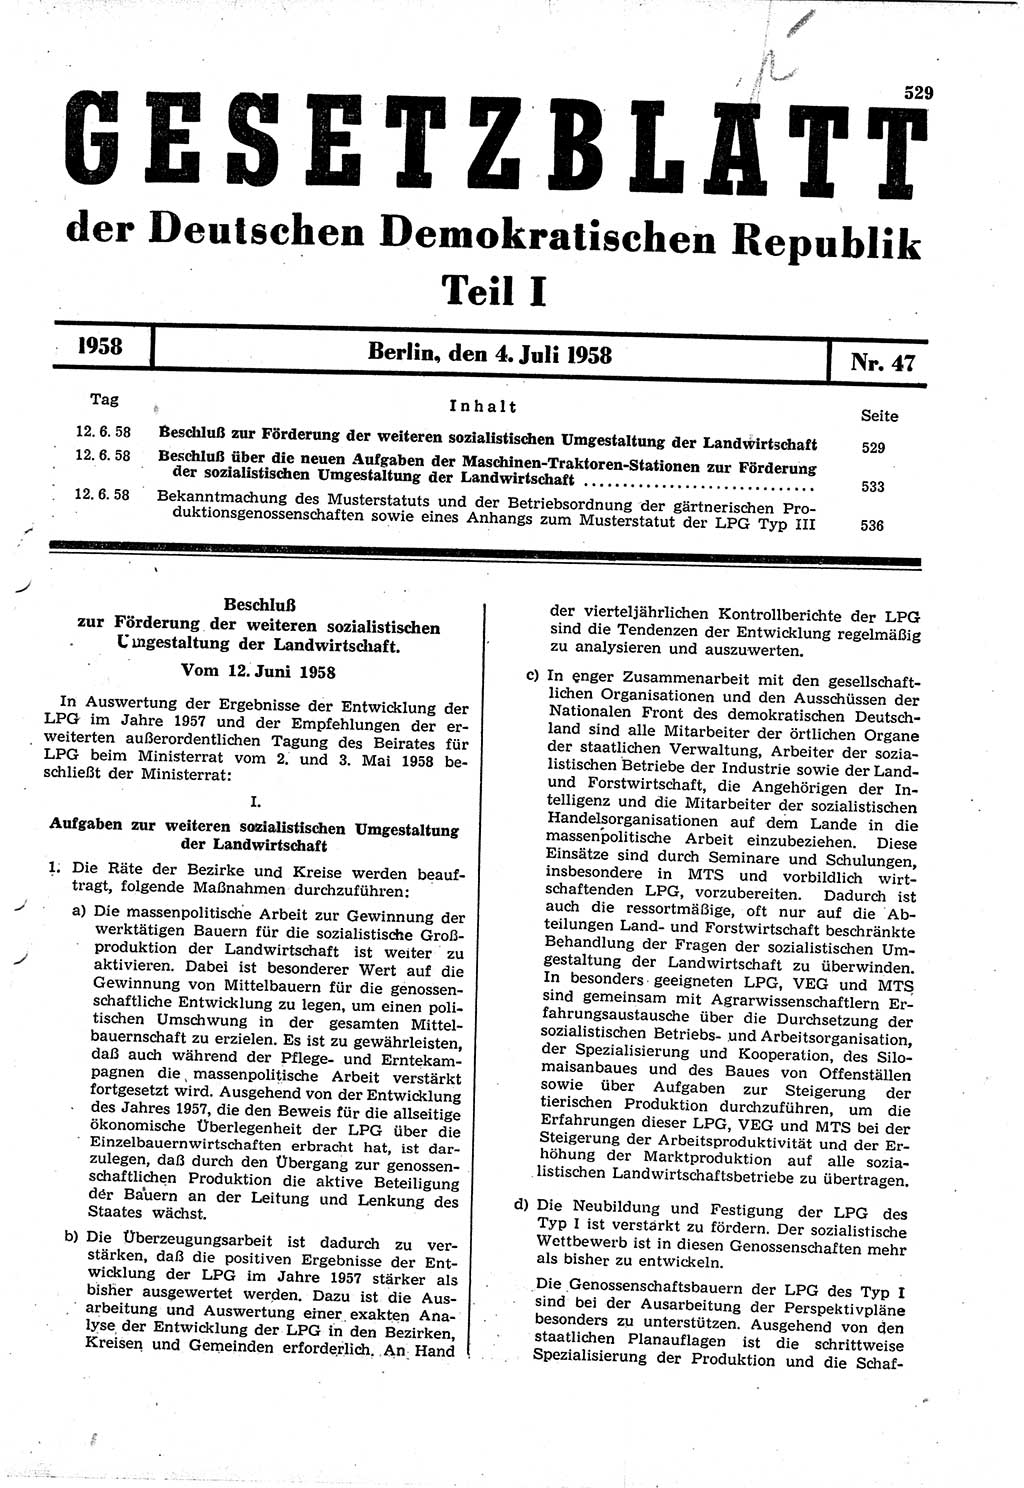 Gesetzblatt (GBl.) der Deutschen Demokratischen Republik (DDR) Teil Ⅰ 1958, Seite 529 (GBl. DDR Ⅰ 1958, S. 529)